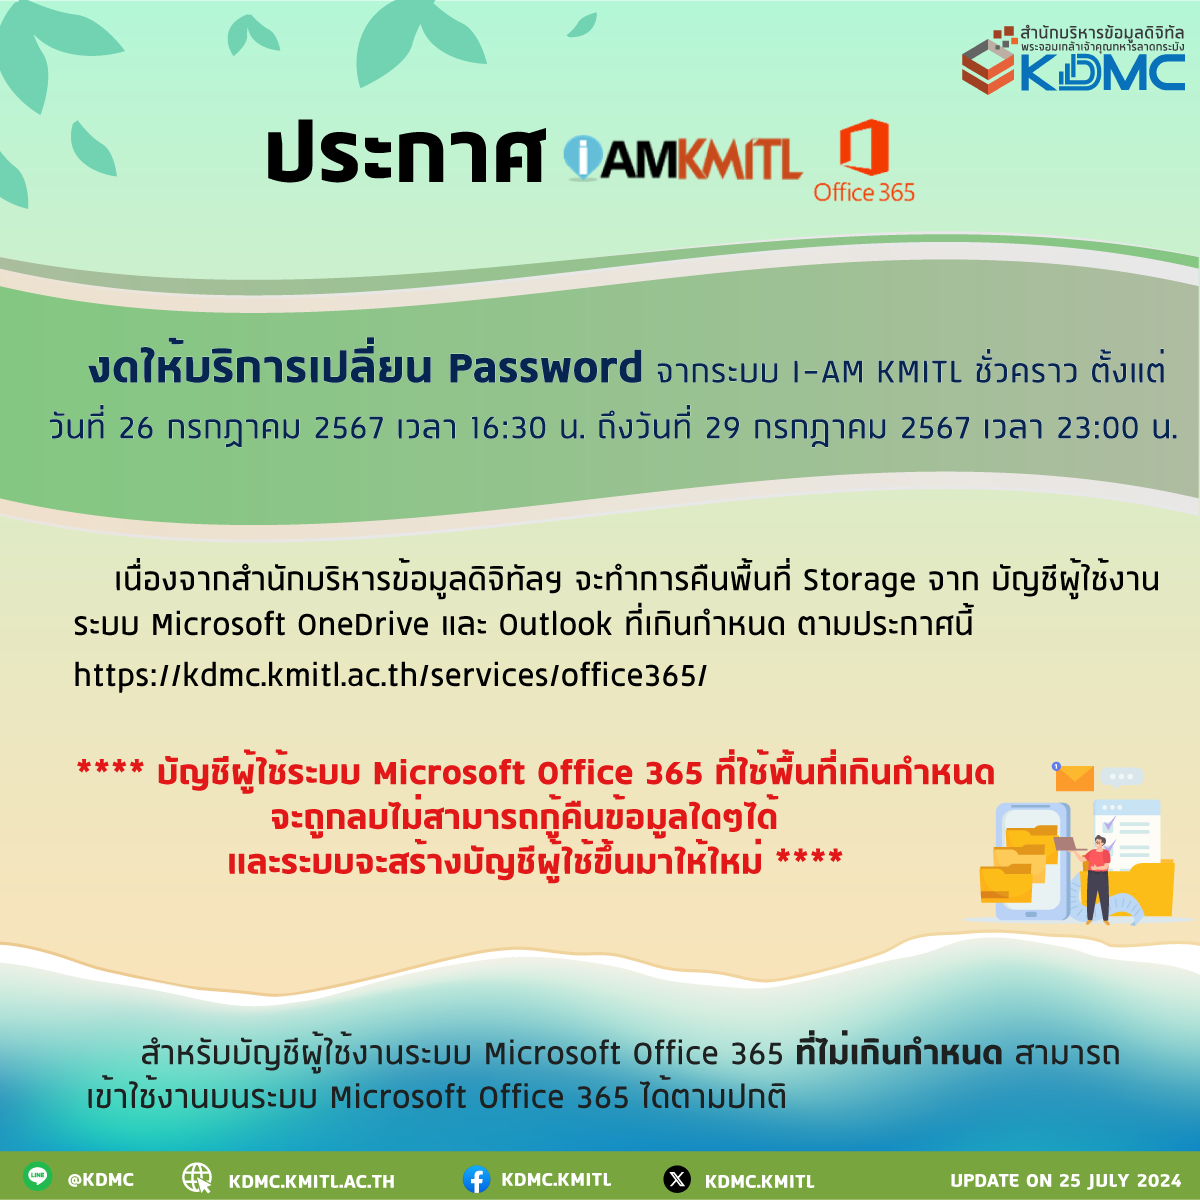 ประกาศงดให้บริการเปลี่ยน password จากระบบ I-AM KMITL ชั่วคราว